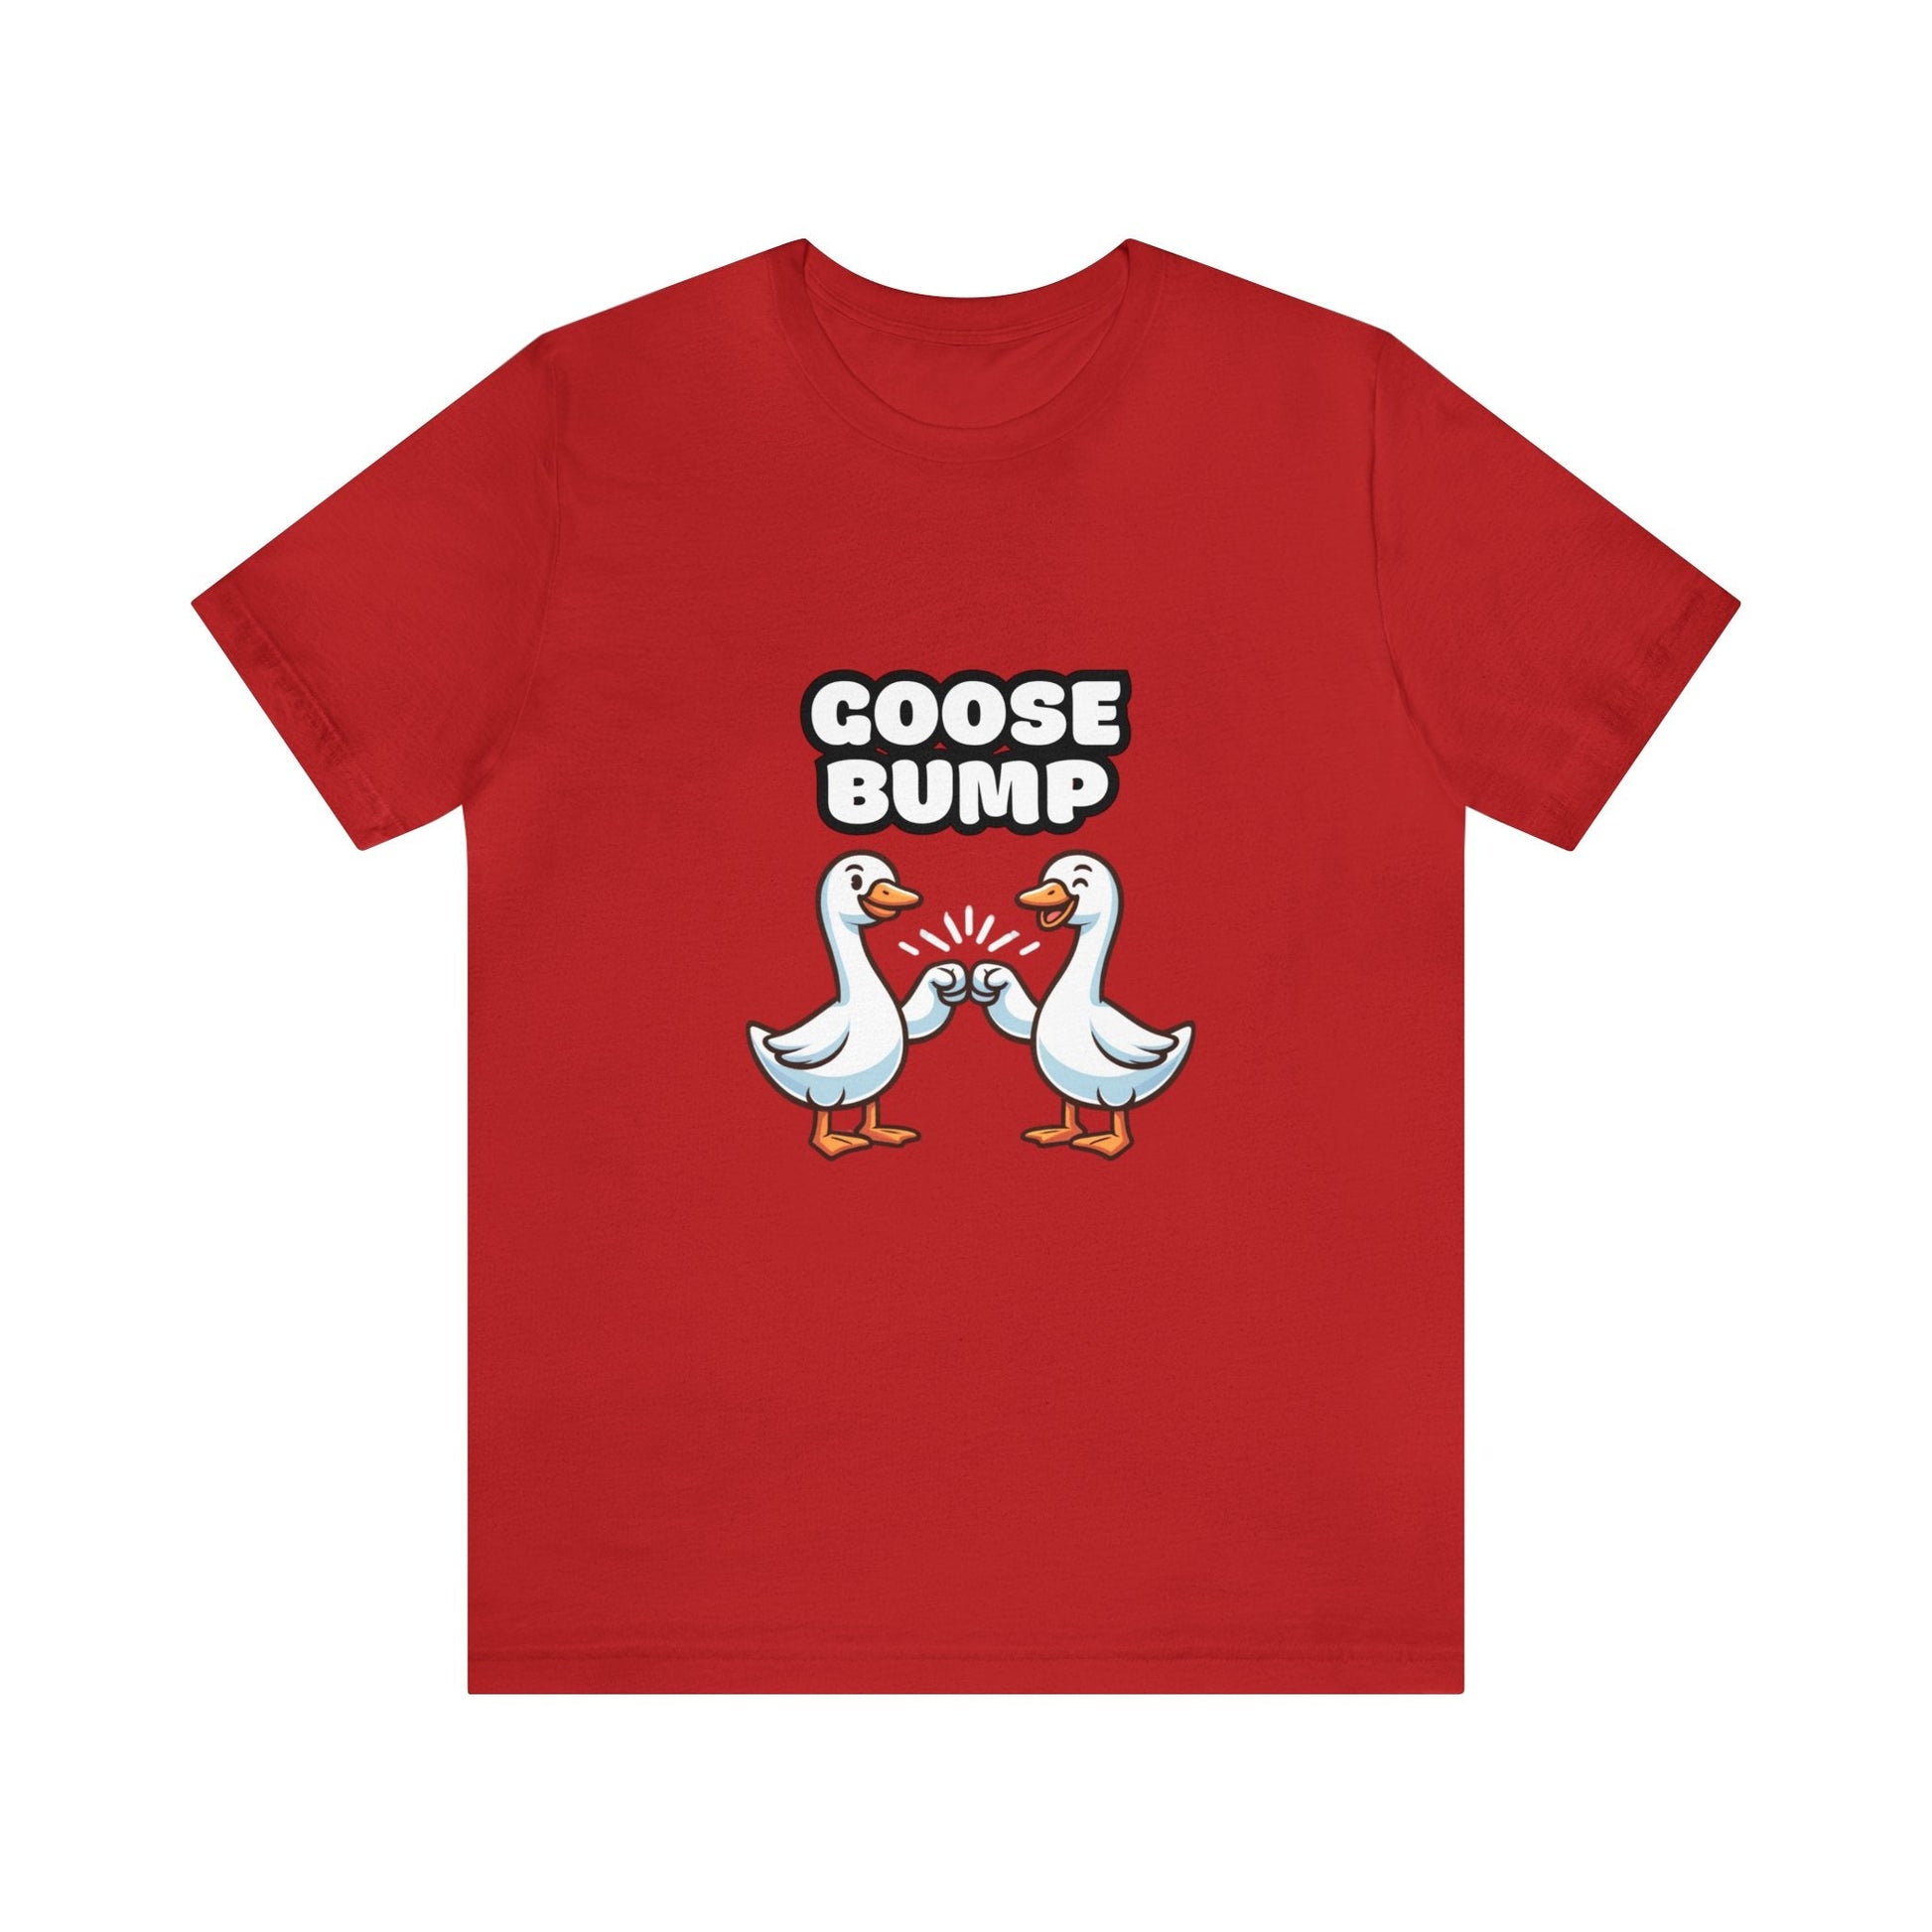 US - Goose Bump - Goose T-shirt Red / XS